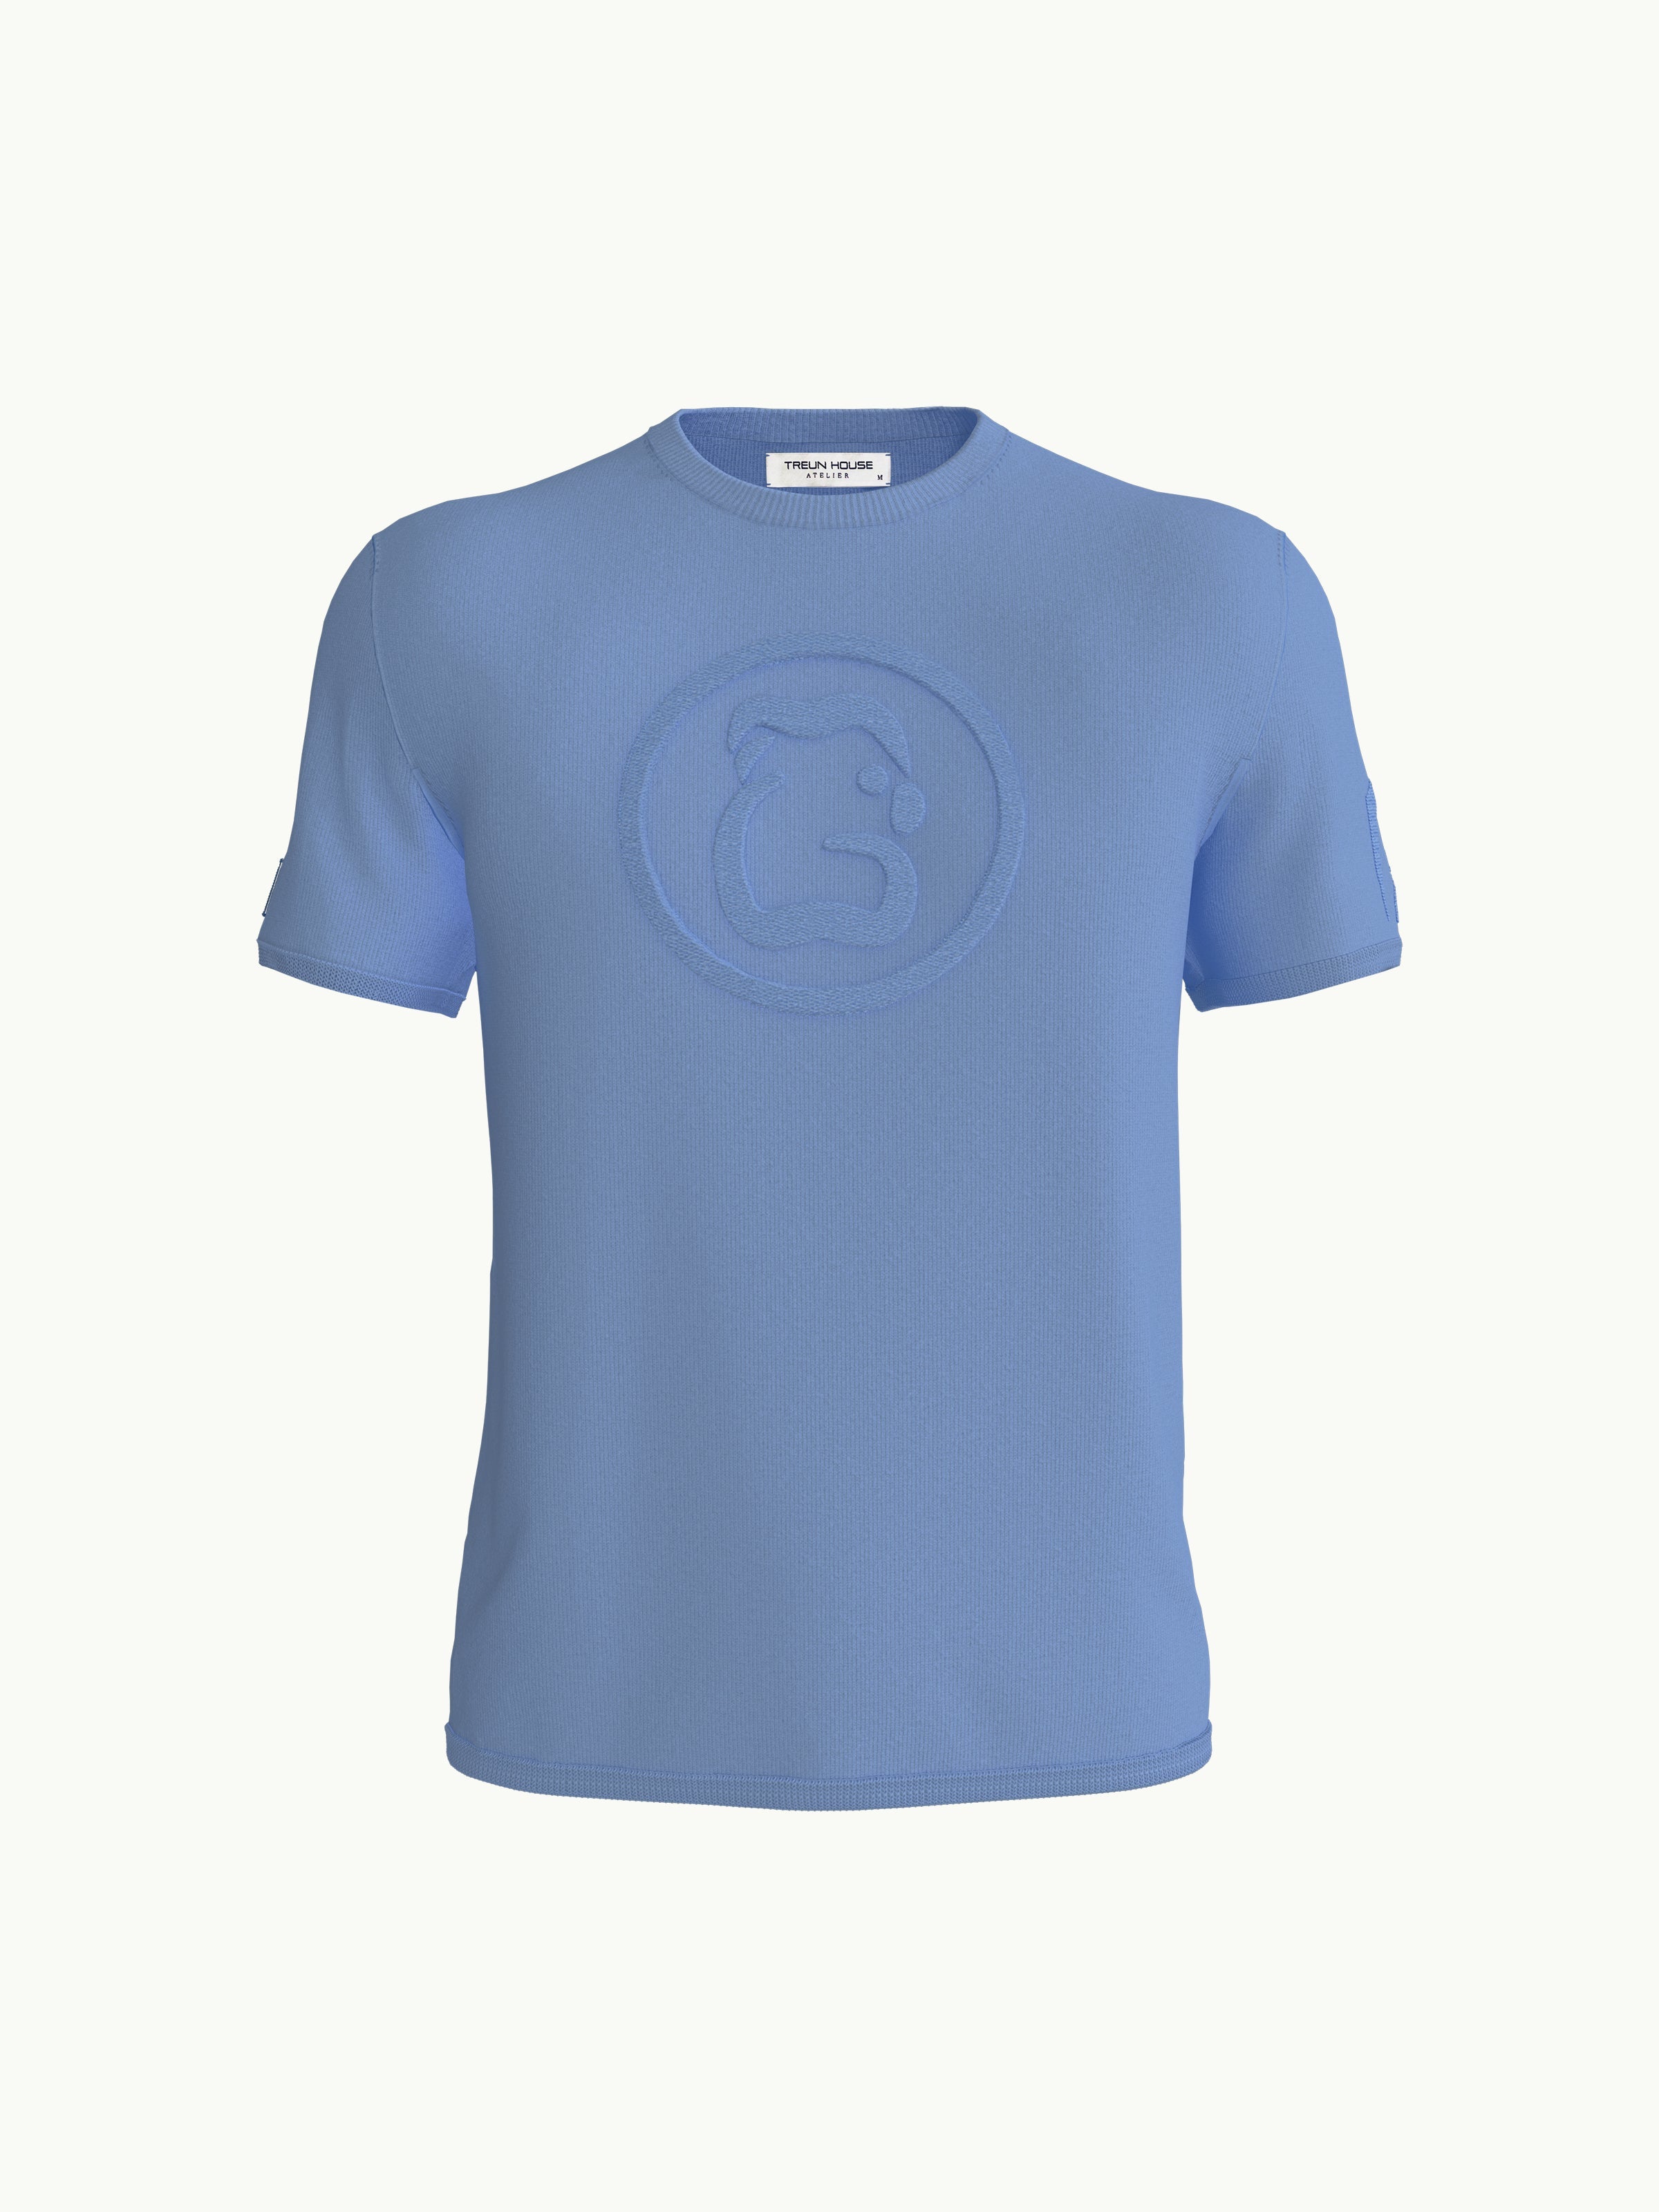 Women's T-Shirt - Rainbowfish Blue